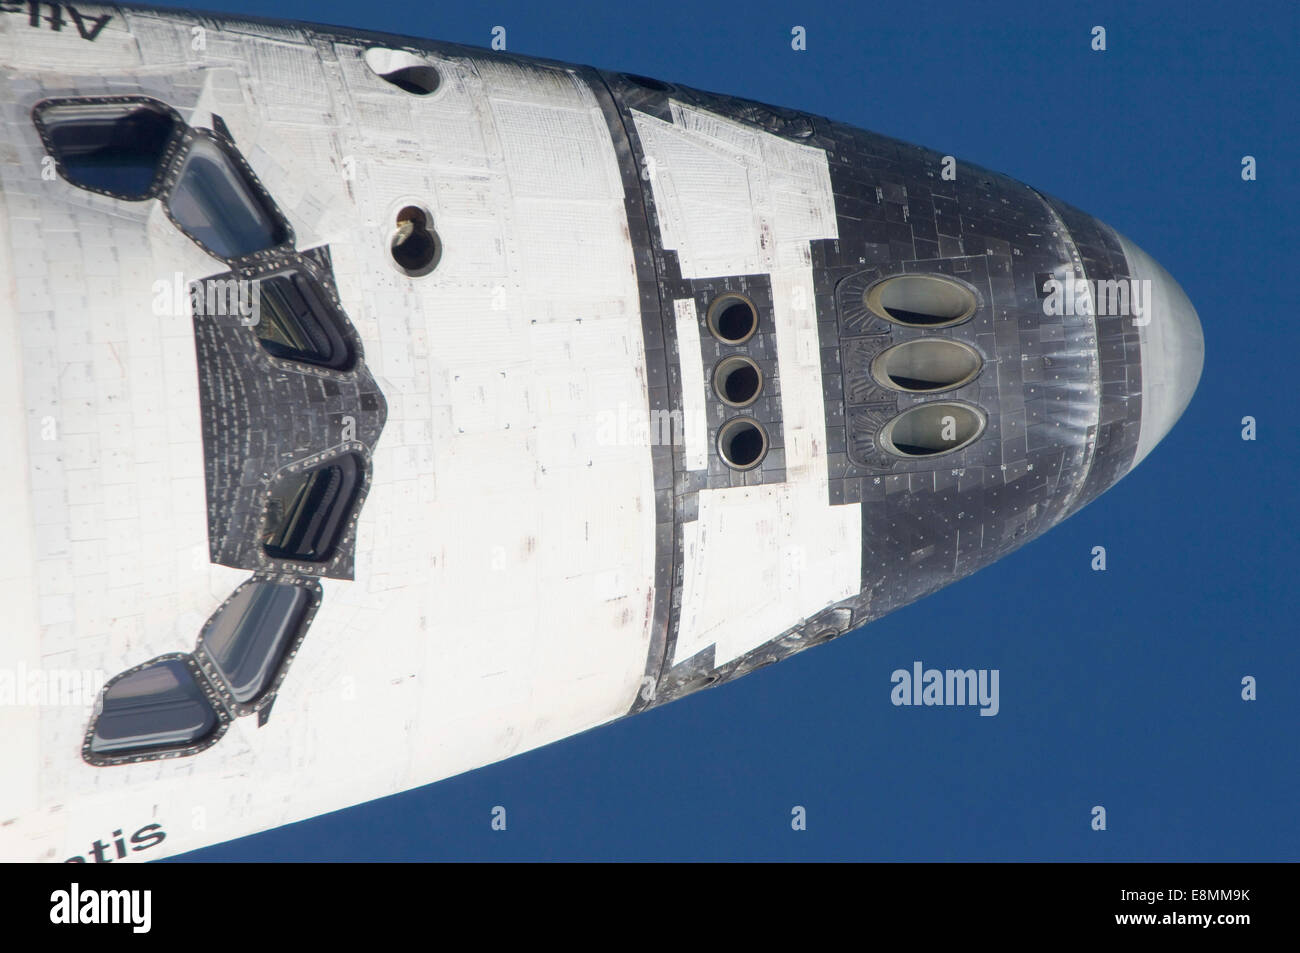 Luglio 10, 2011 - Close-up della sezione anteriore della navetta spaziale Atlantis in orbita intorno alla terra. Foto Stock